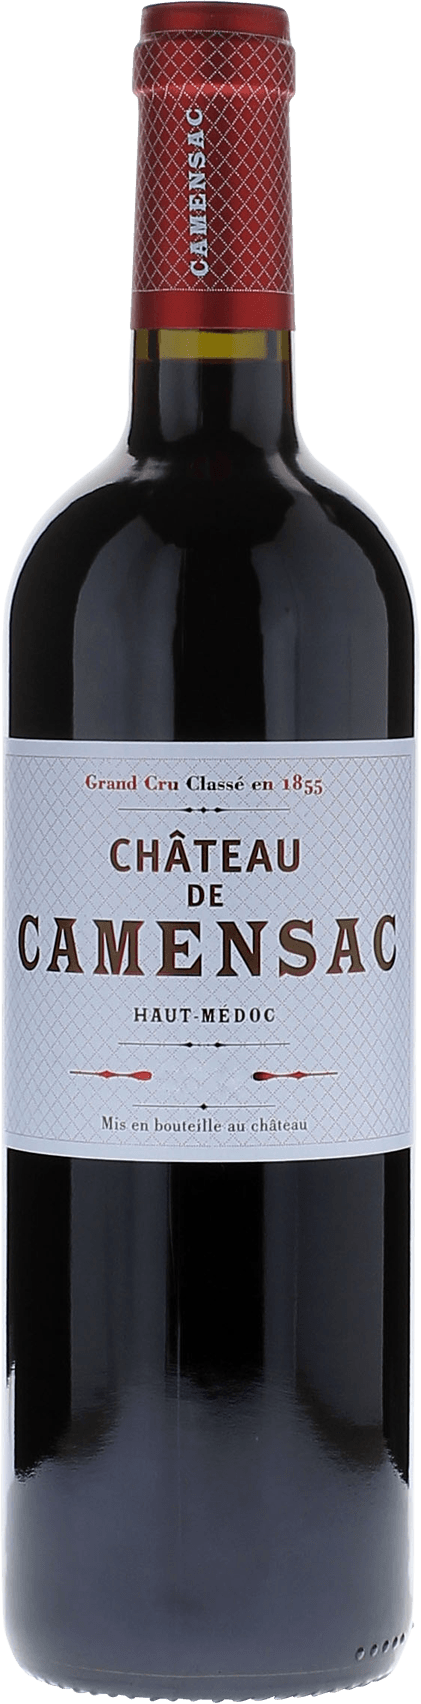 Camensac 2005 5me Grand cru class Mdoc, Bordeaux rouge